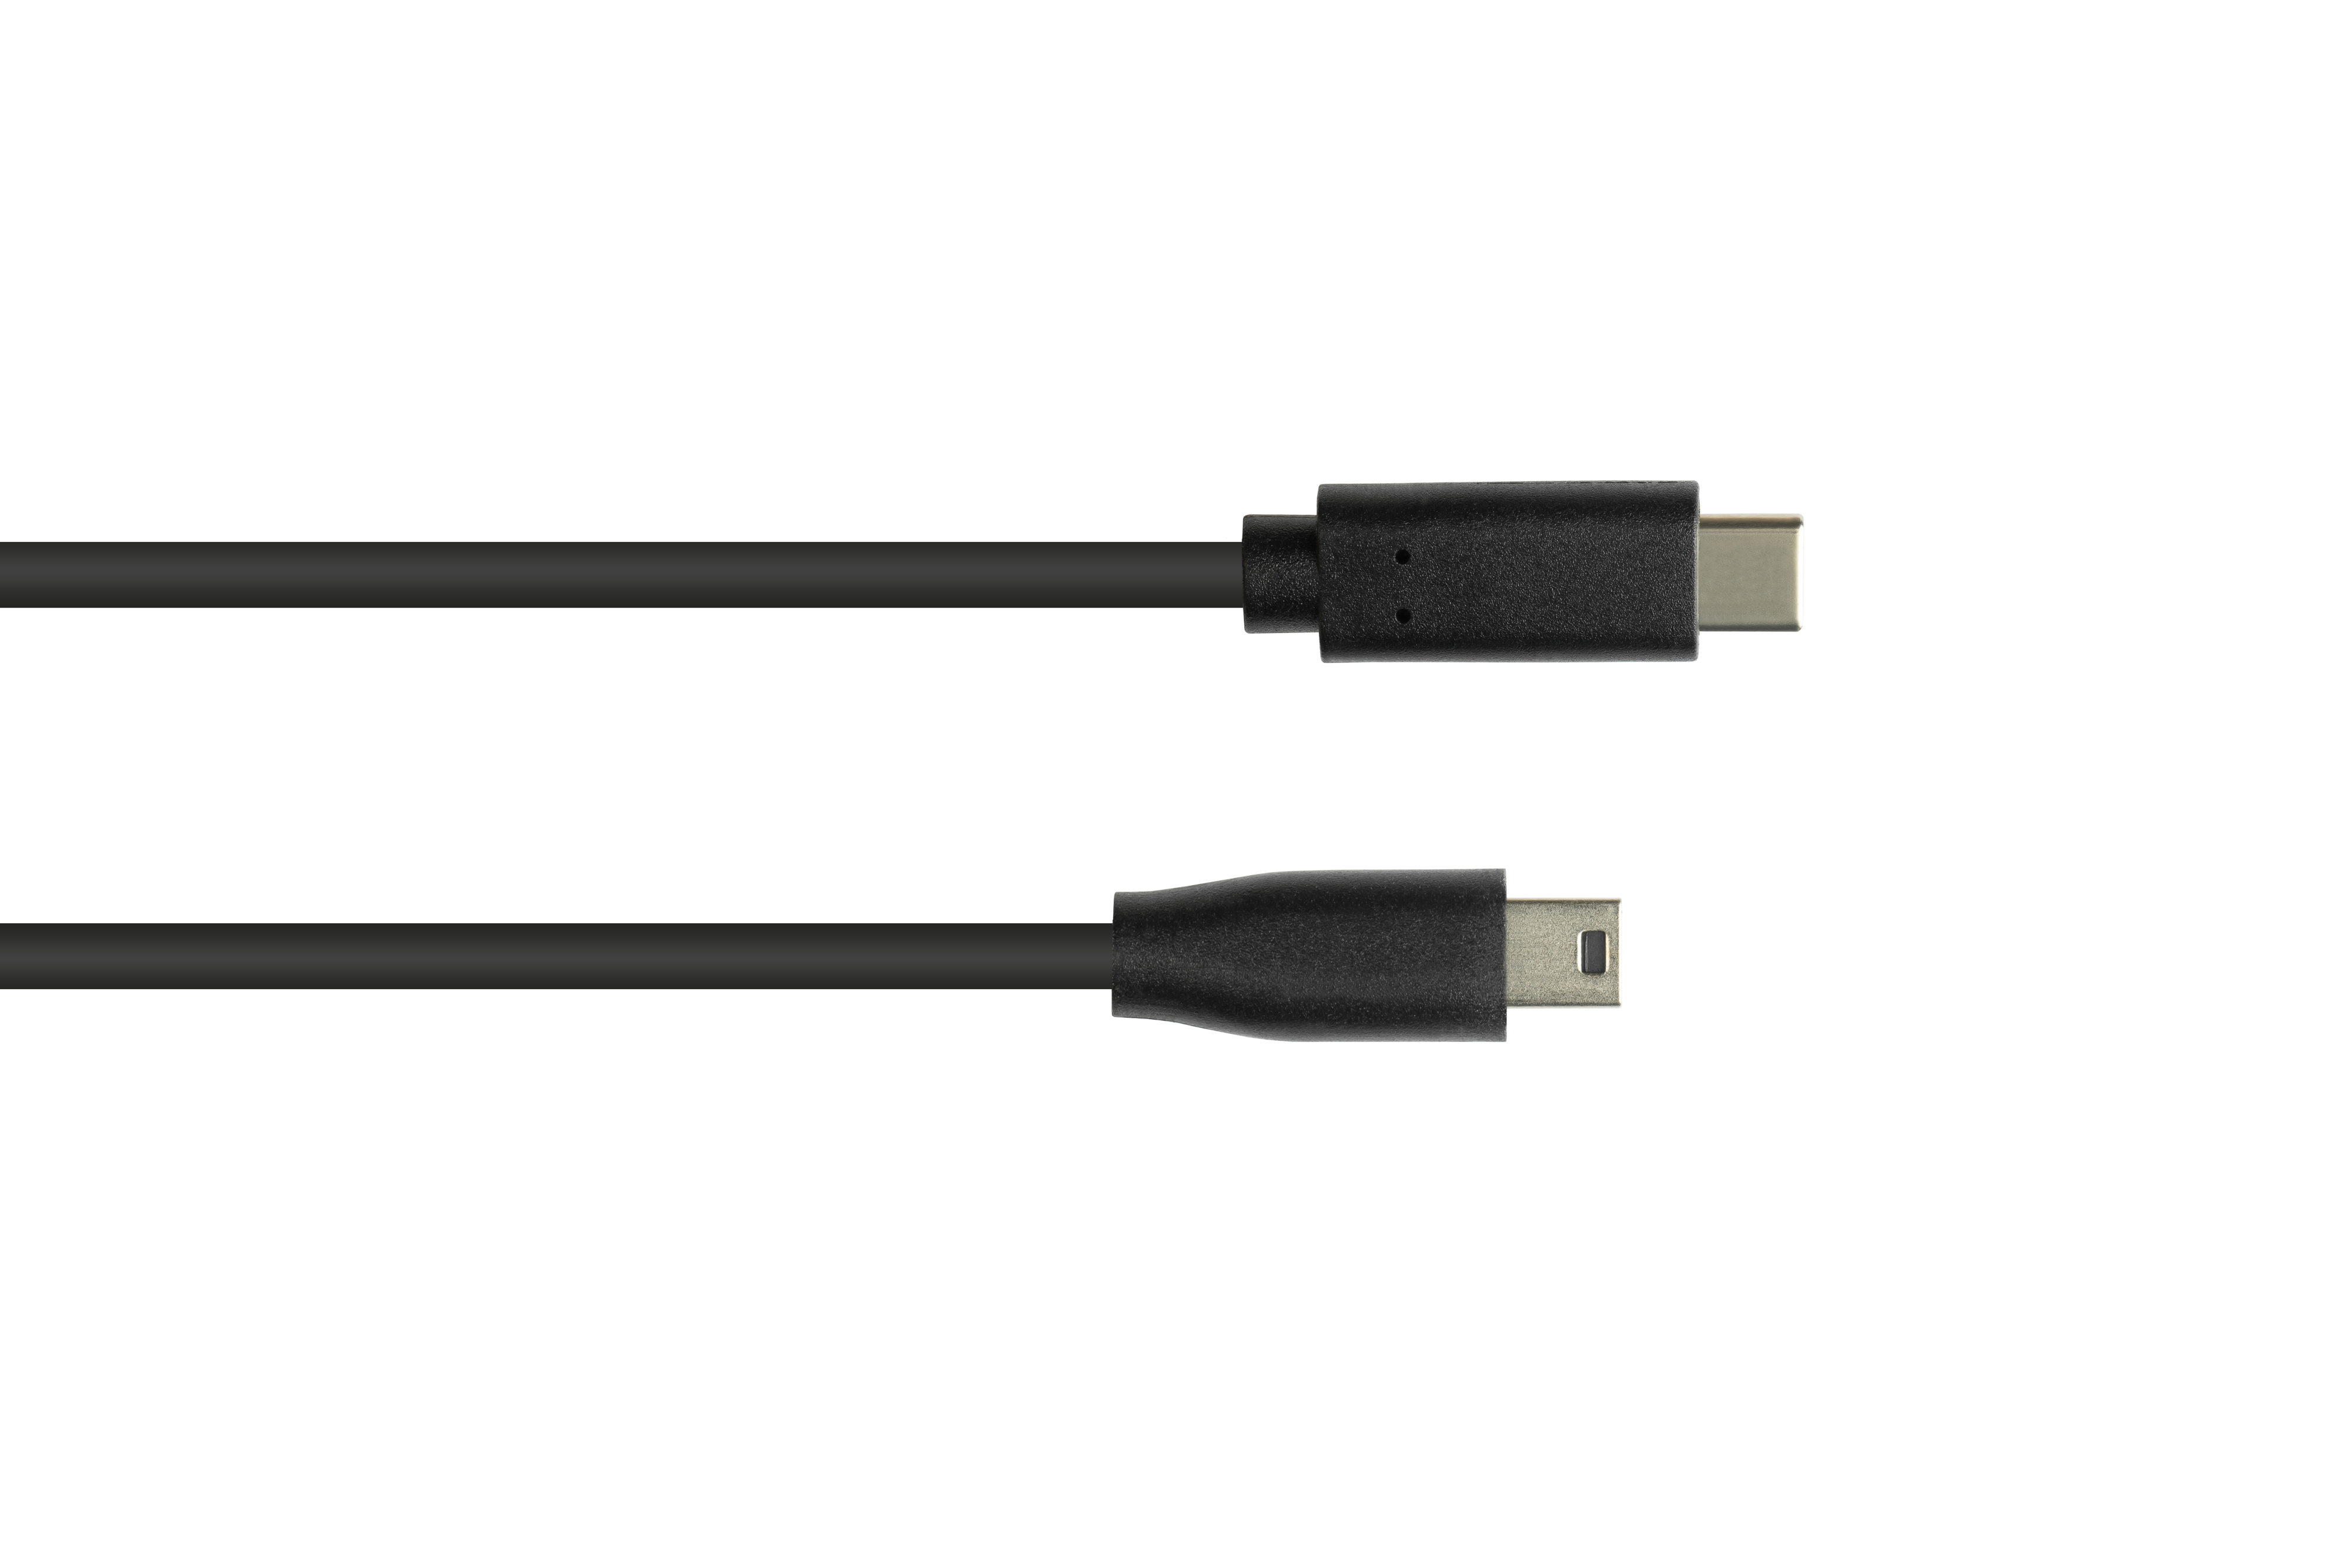 Stecker an USB 5-pin, GOOD schwarz USB-C™ 2.0, Anschlusskabel Mini CONNECTIONS B Stecker